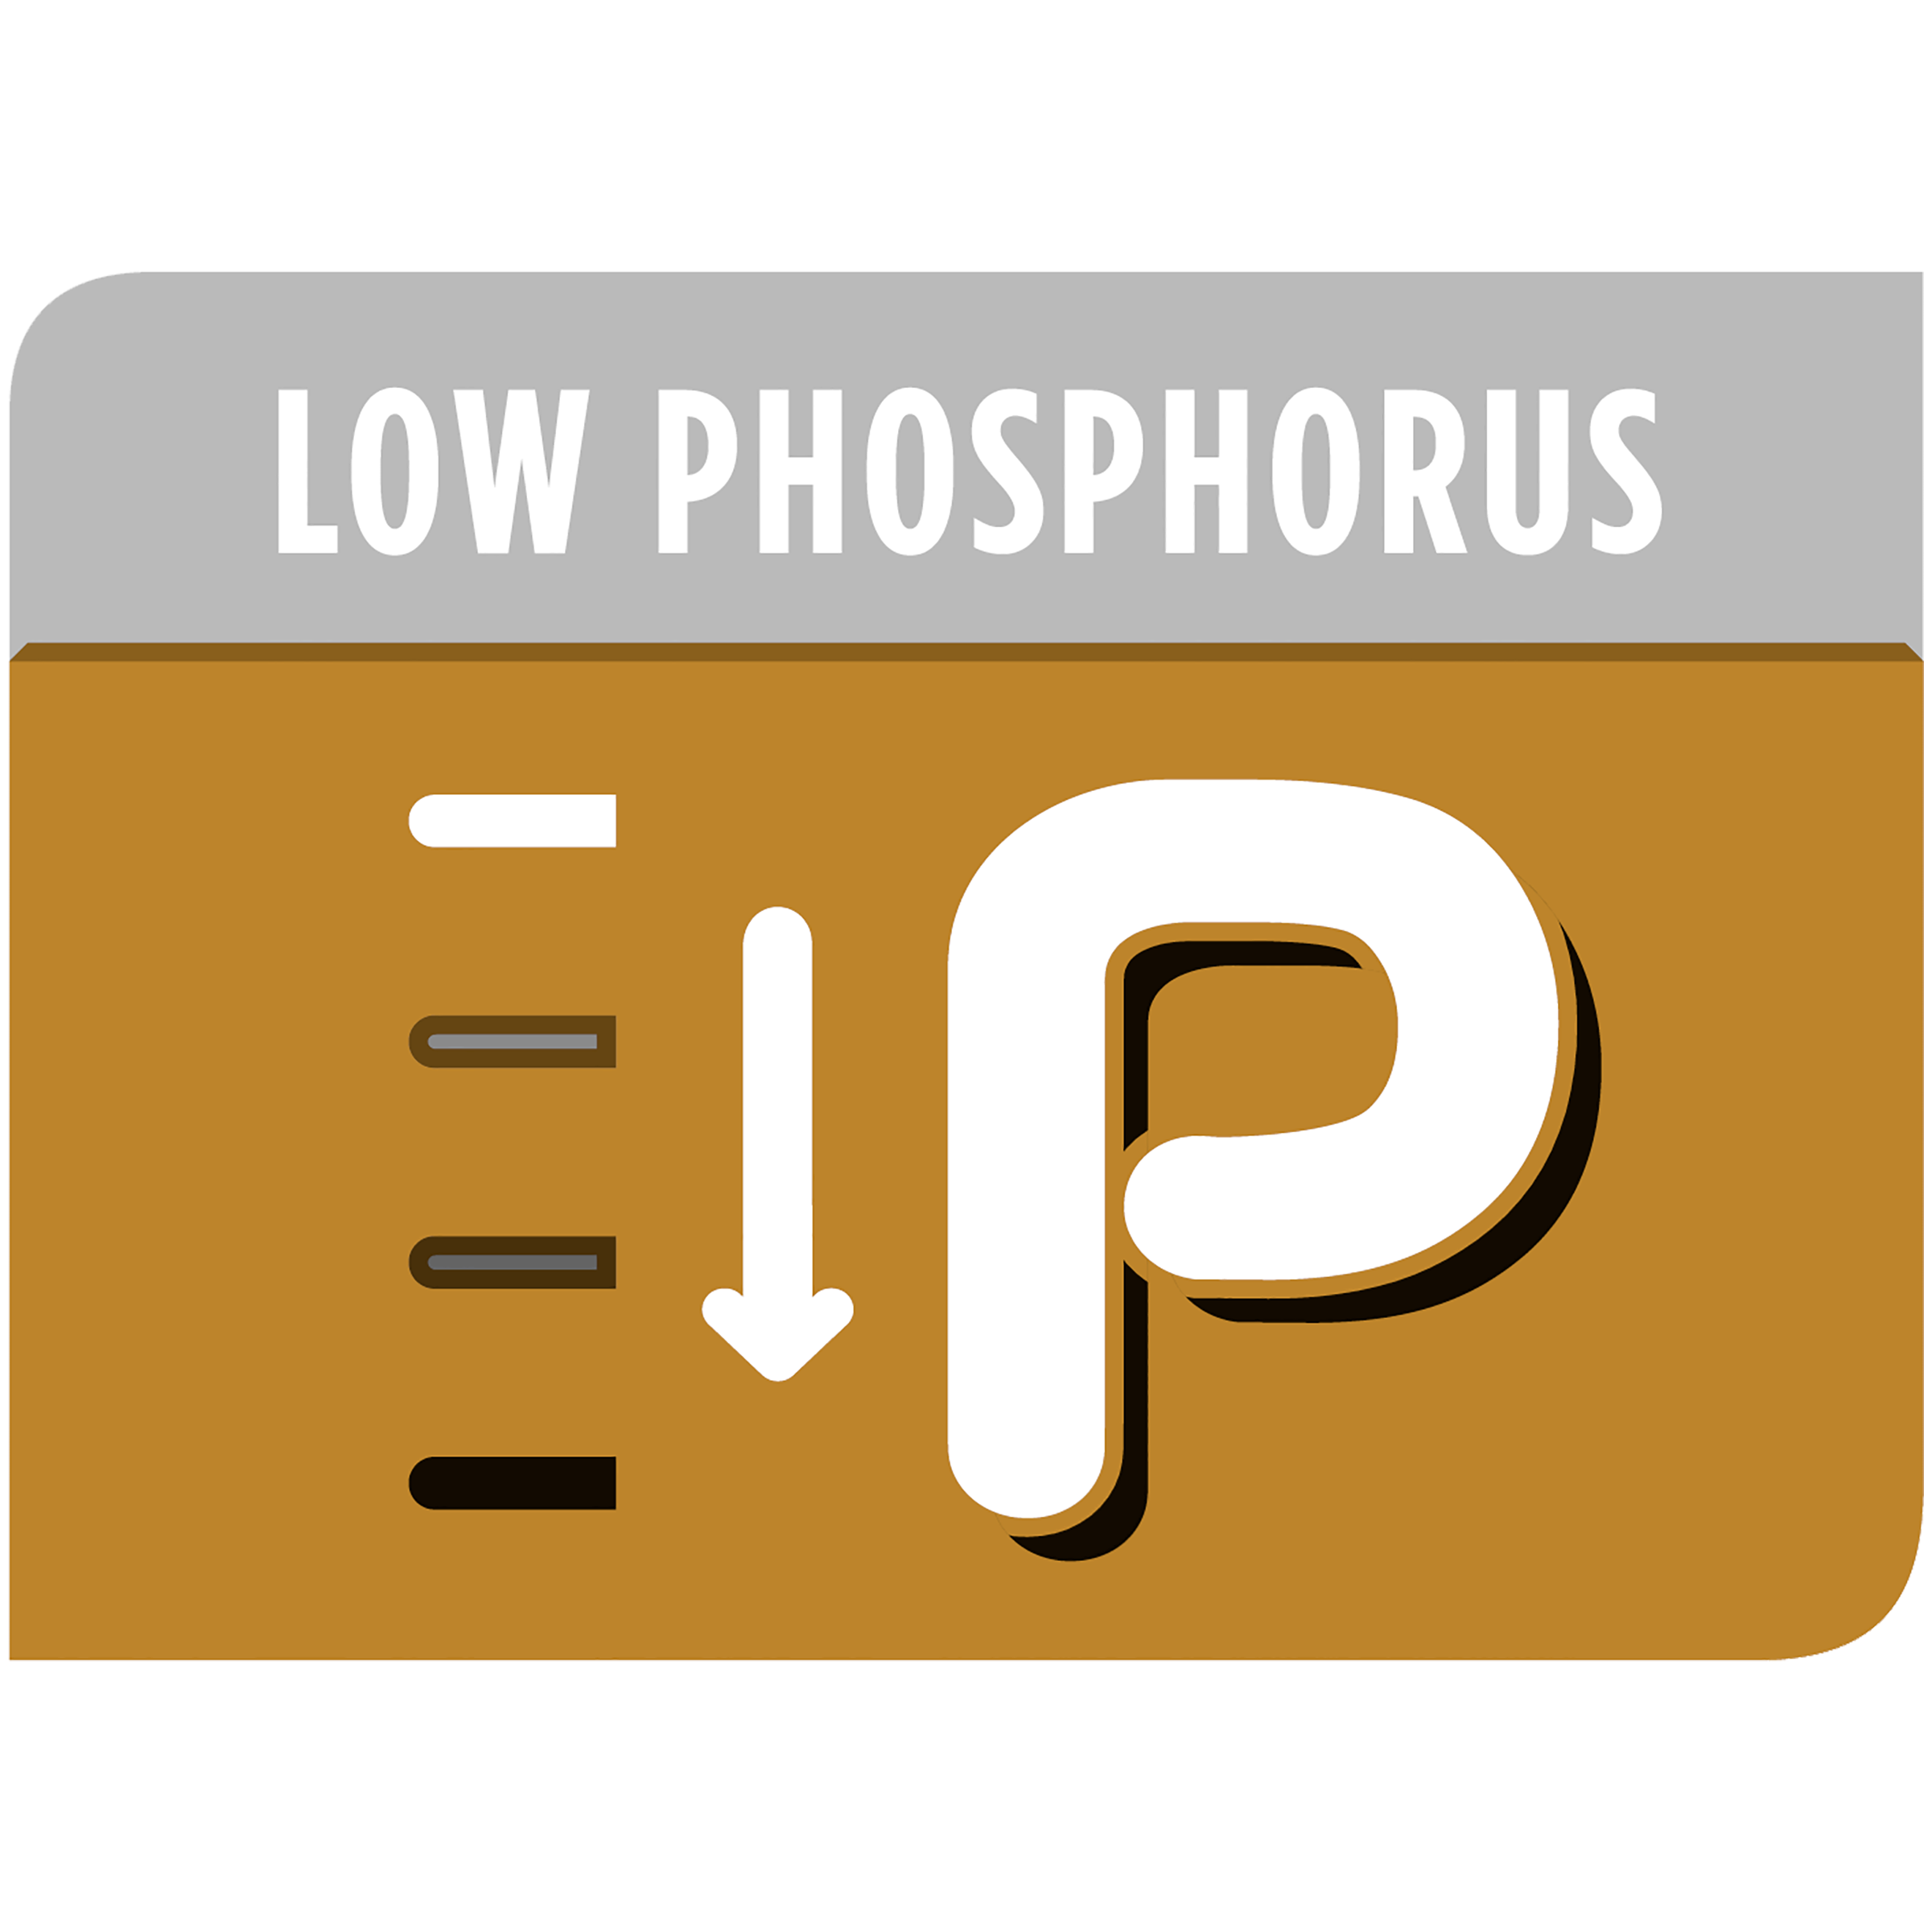 Ограниченное содержание фосфора в рационе